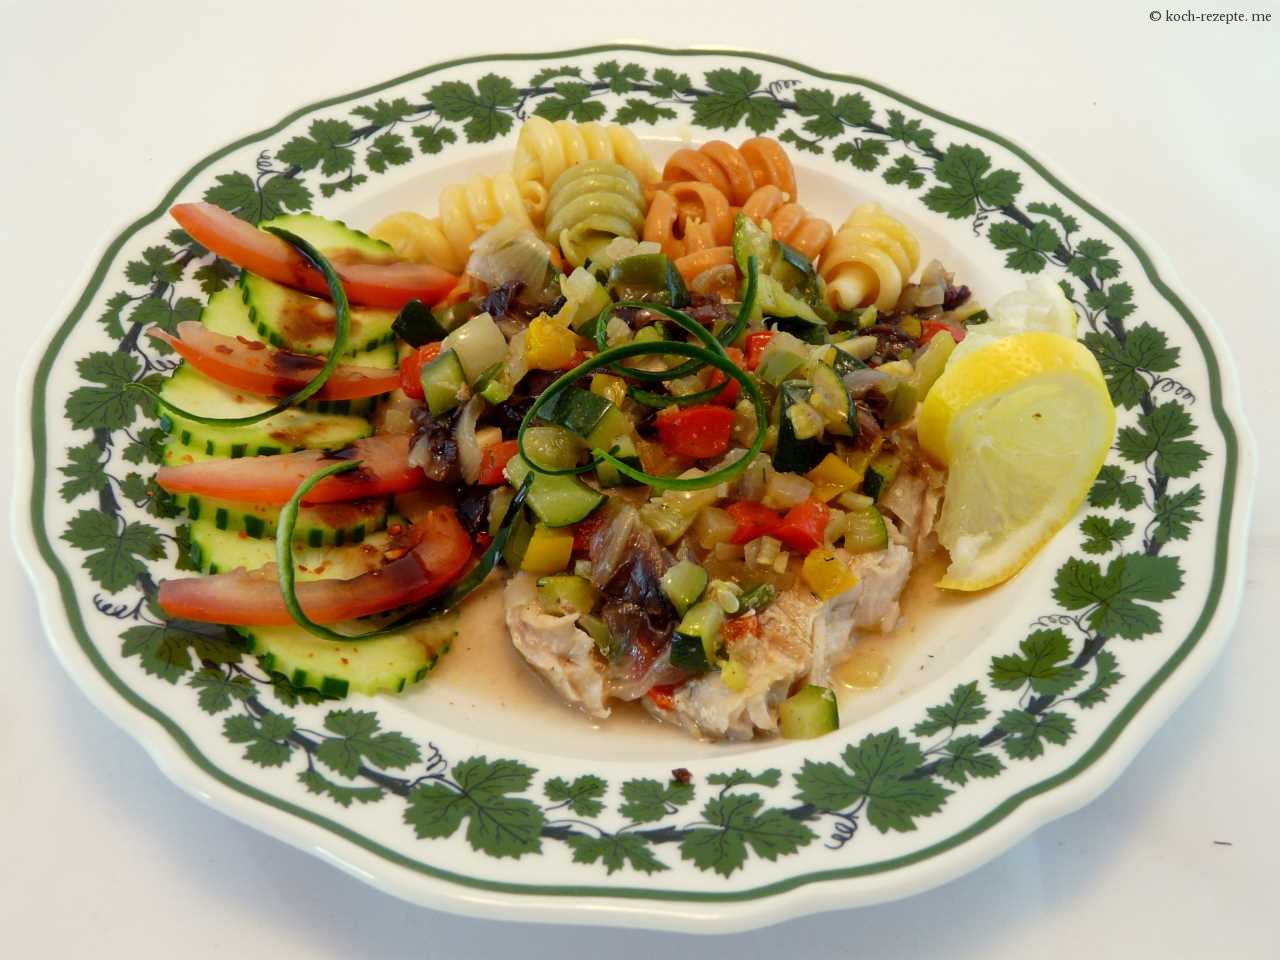 Viktoriabarsch mit Gemüse ein Fisch Rezept im Bratschlauch gedünstet